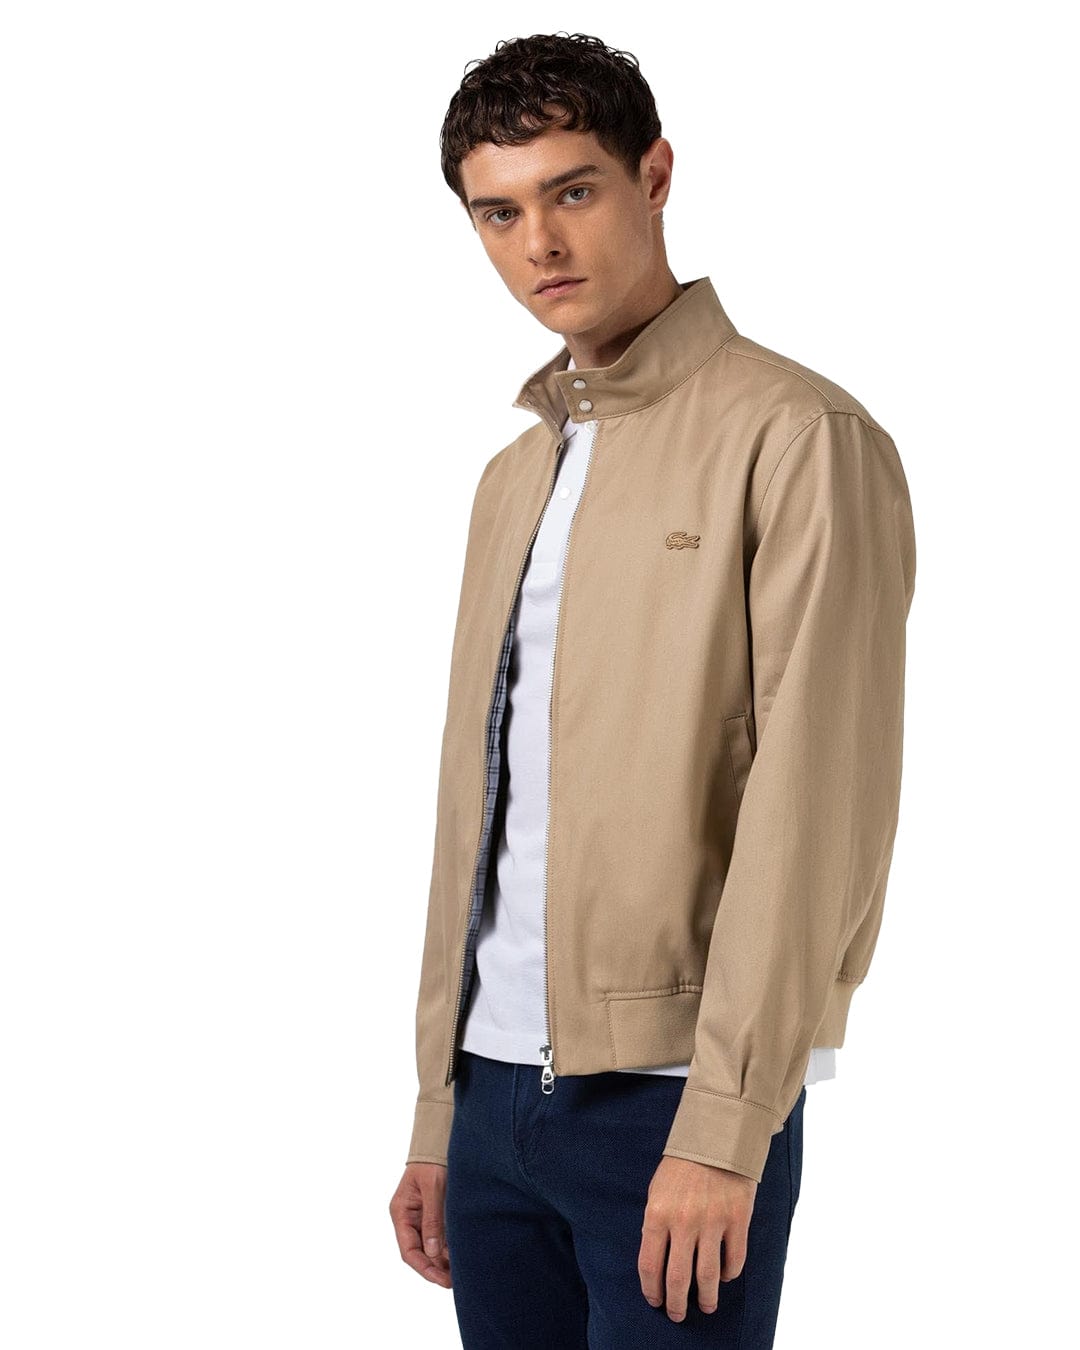 Lacoste Outerwear Lacoste Beige Lightweight Cotton Jacket